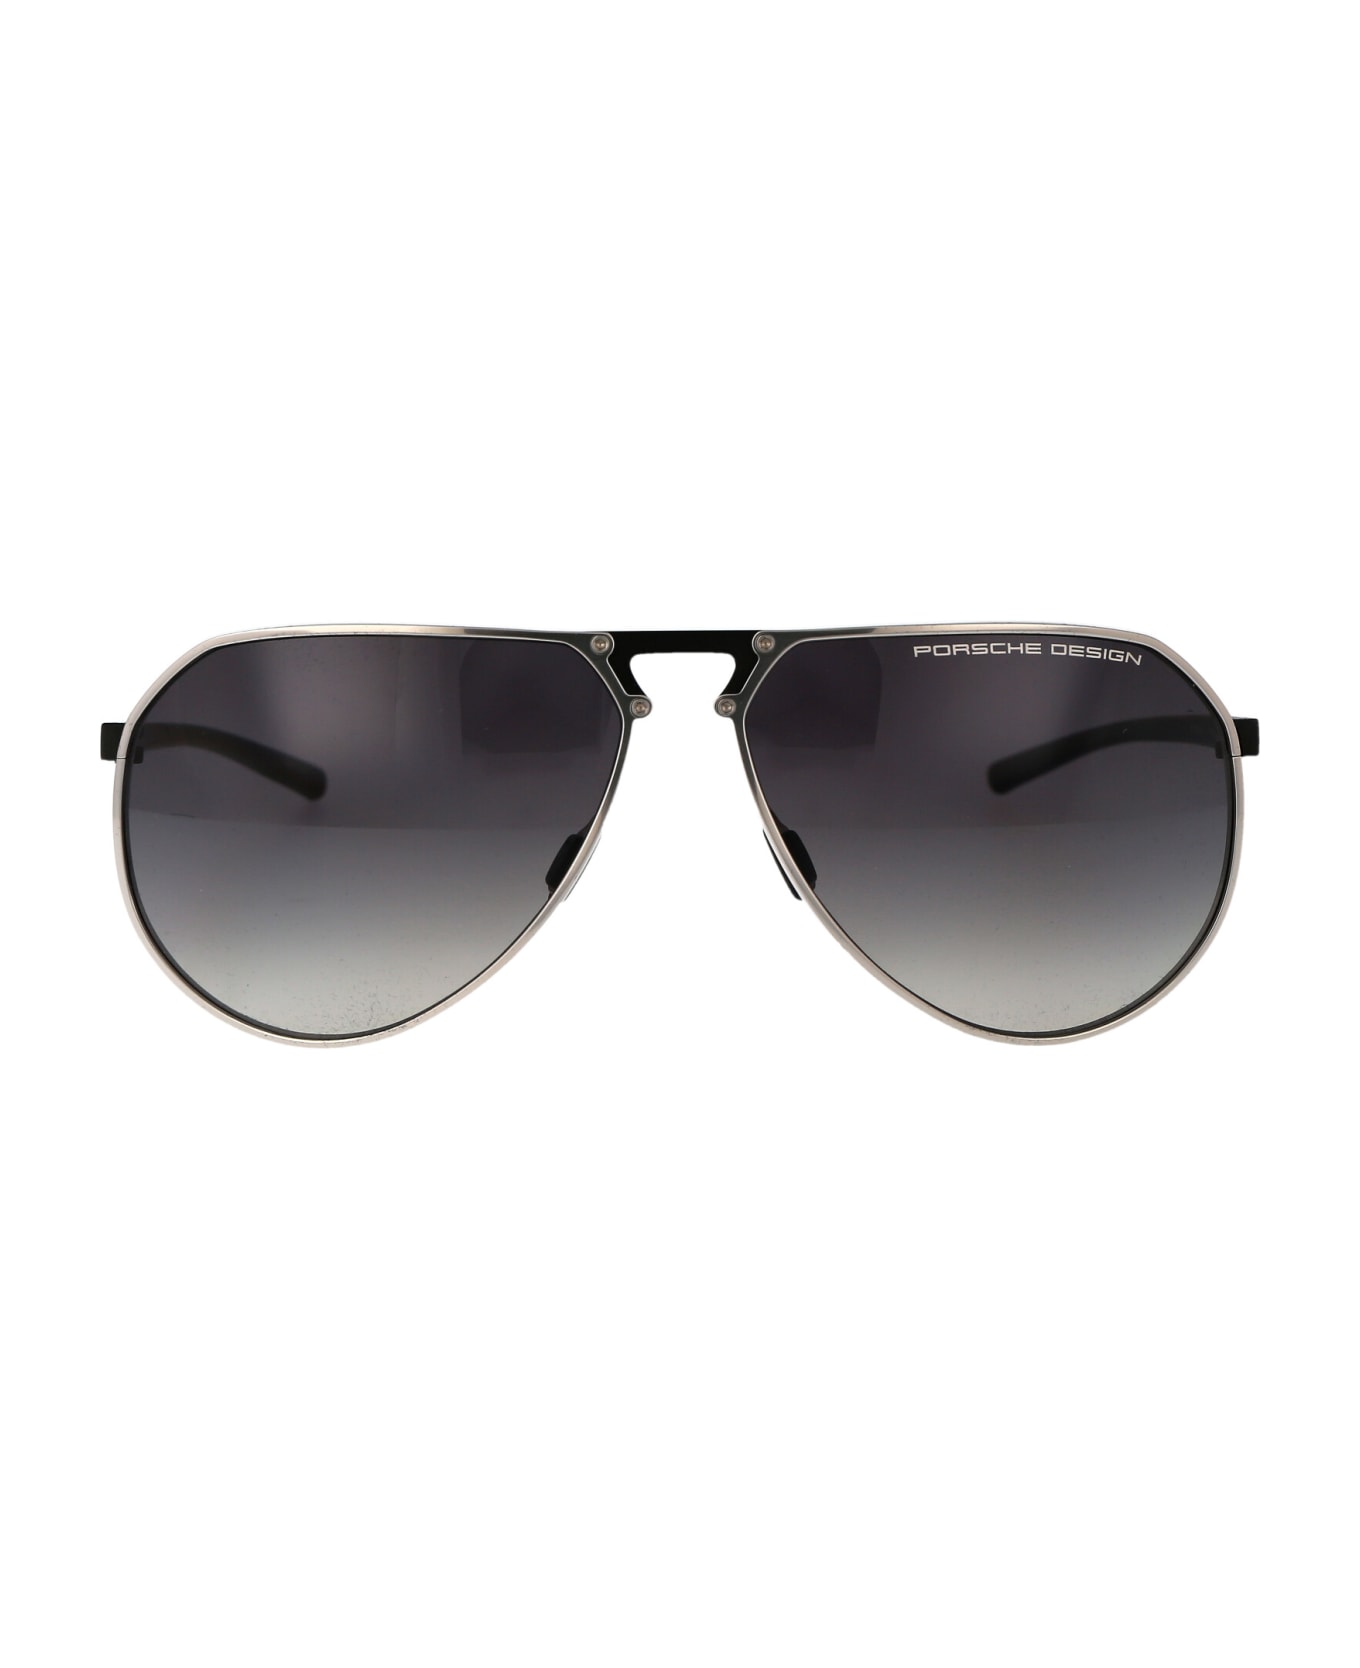 Porsche Design P8938 Sunglasses - B226 TITANIUM BLACK